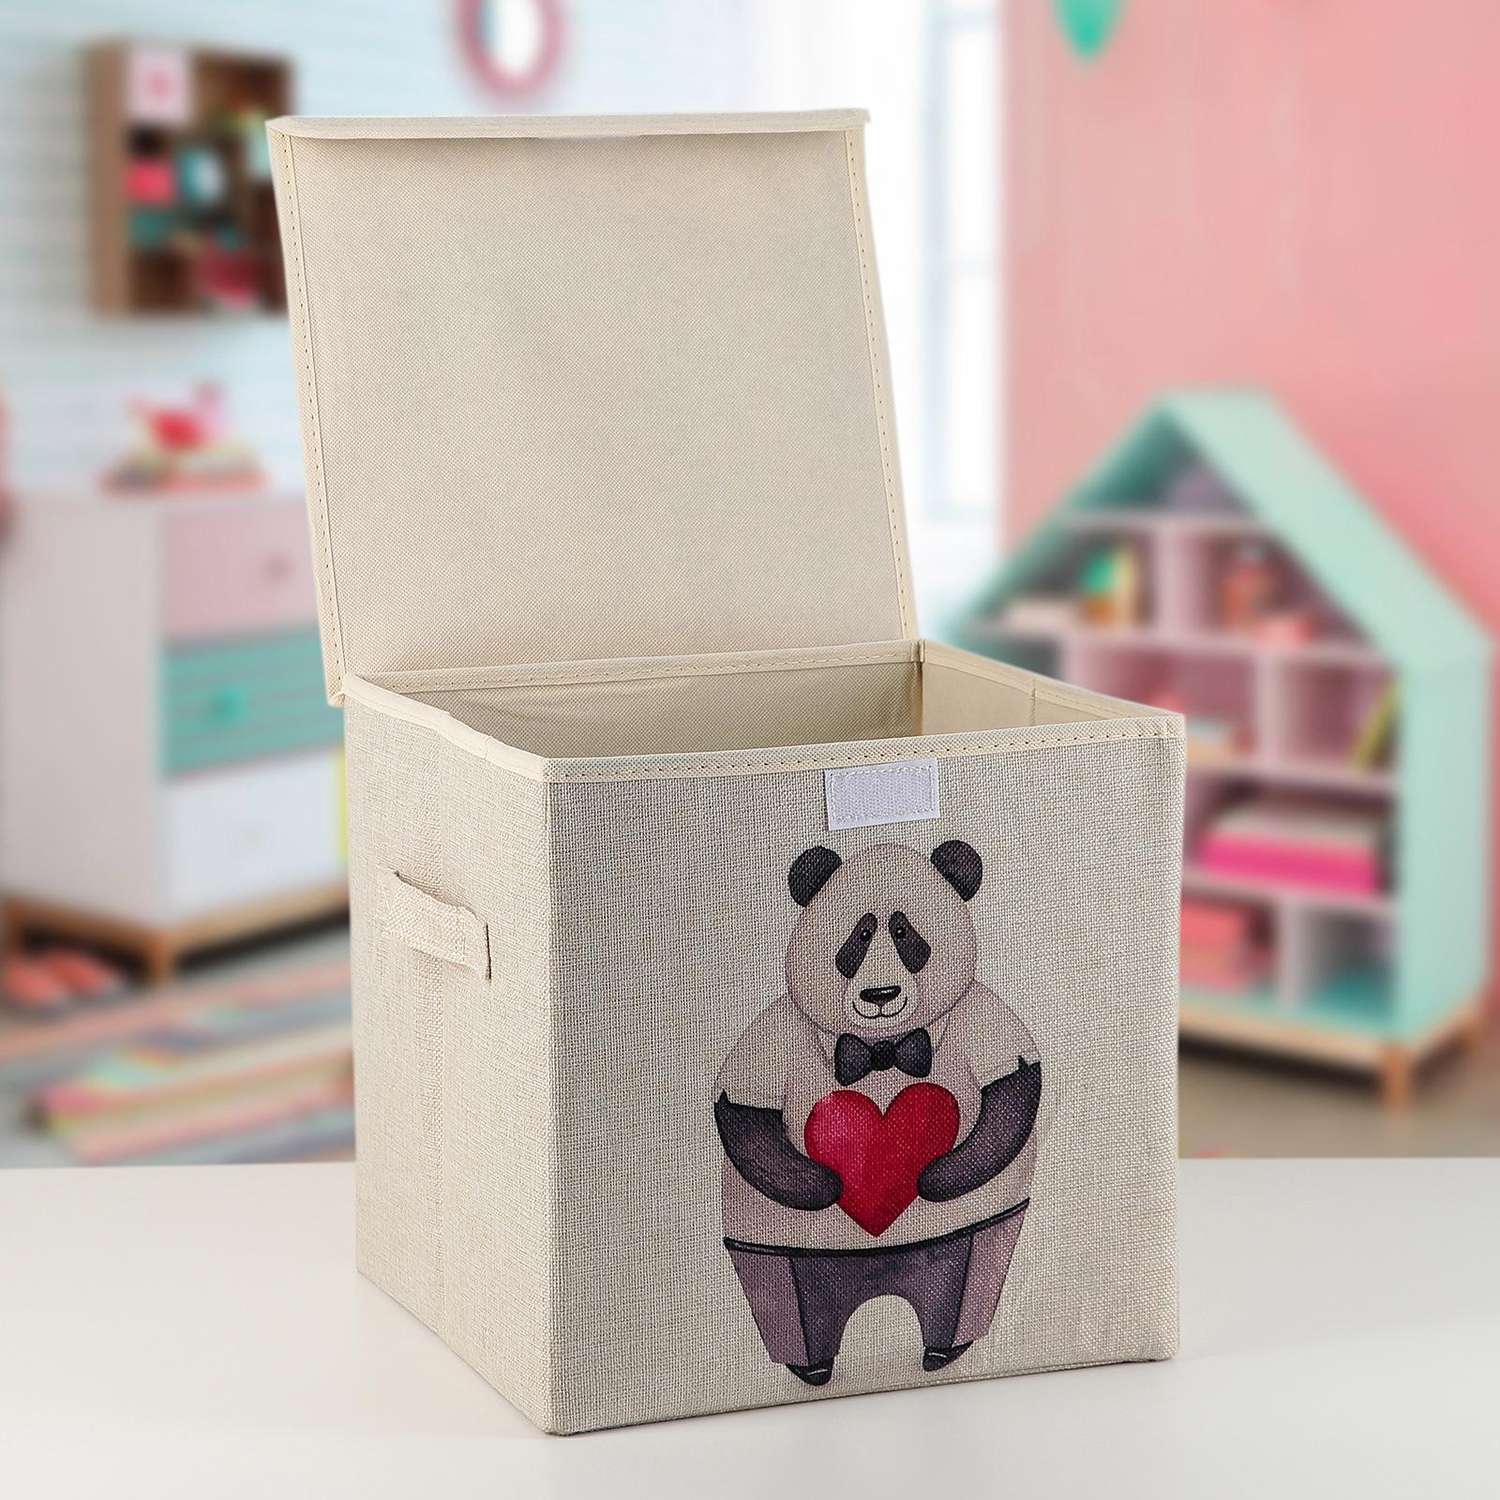 Короб Школа Талантов стеллажный для хранения с крышкой «Влюблённая панда» 30×30×28 5 см - фото 2